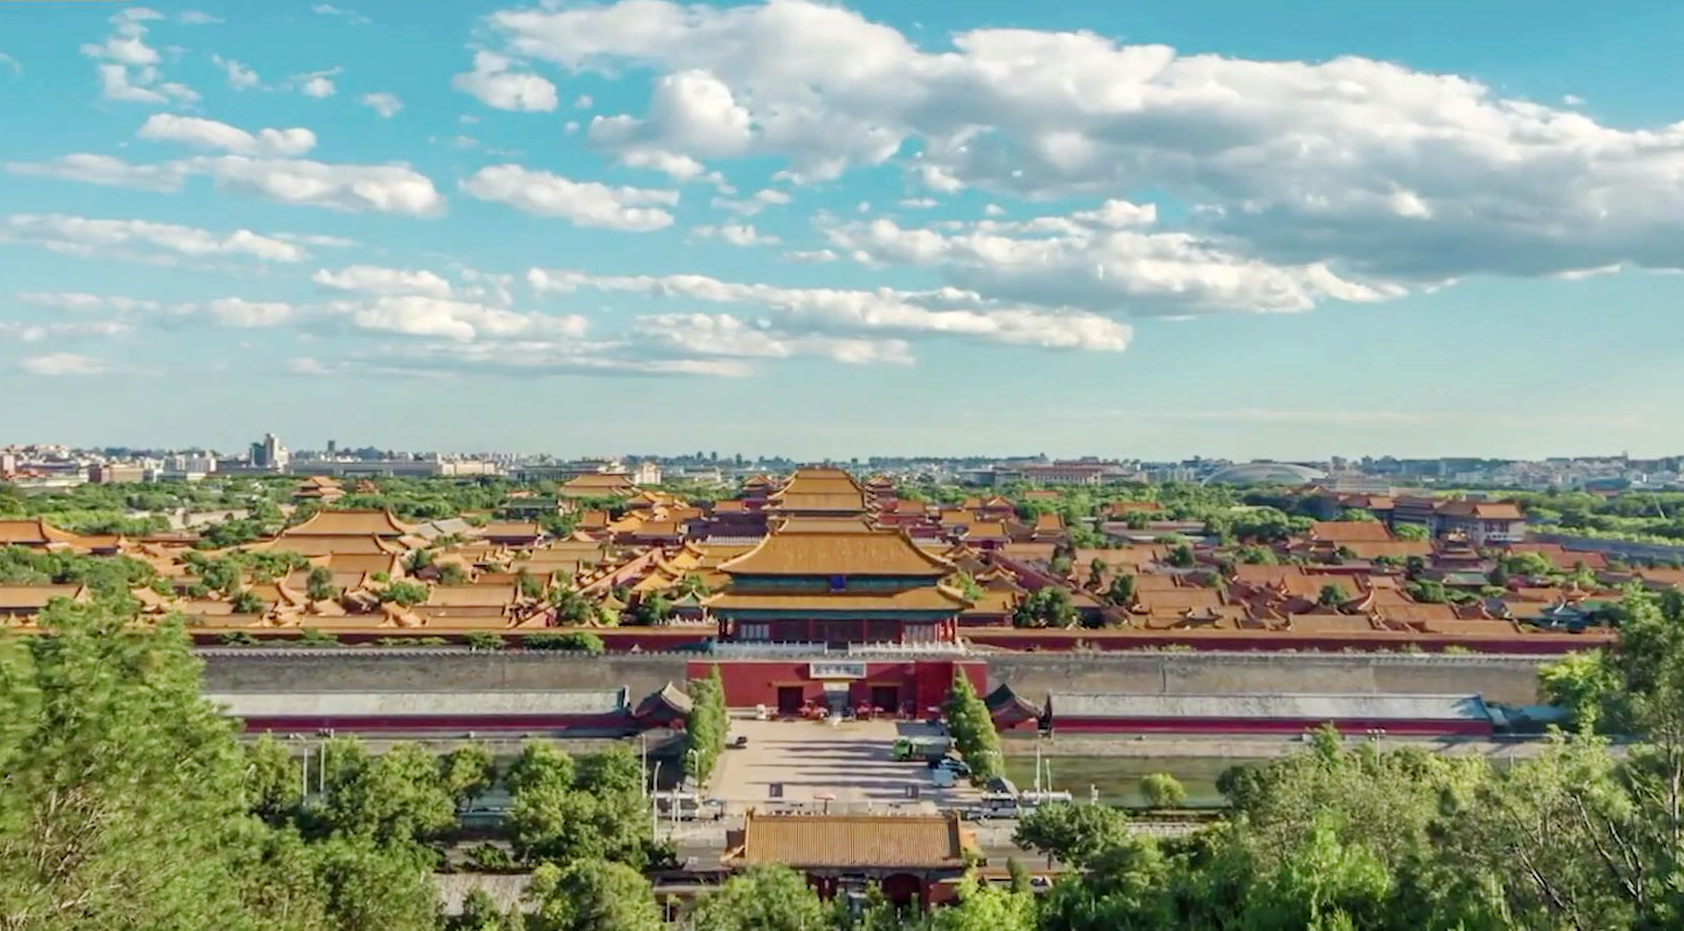 An aerial view of Beijing's Forbidden City /CGTN